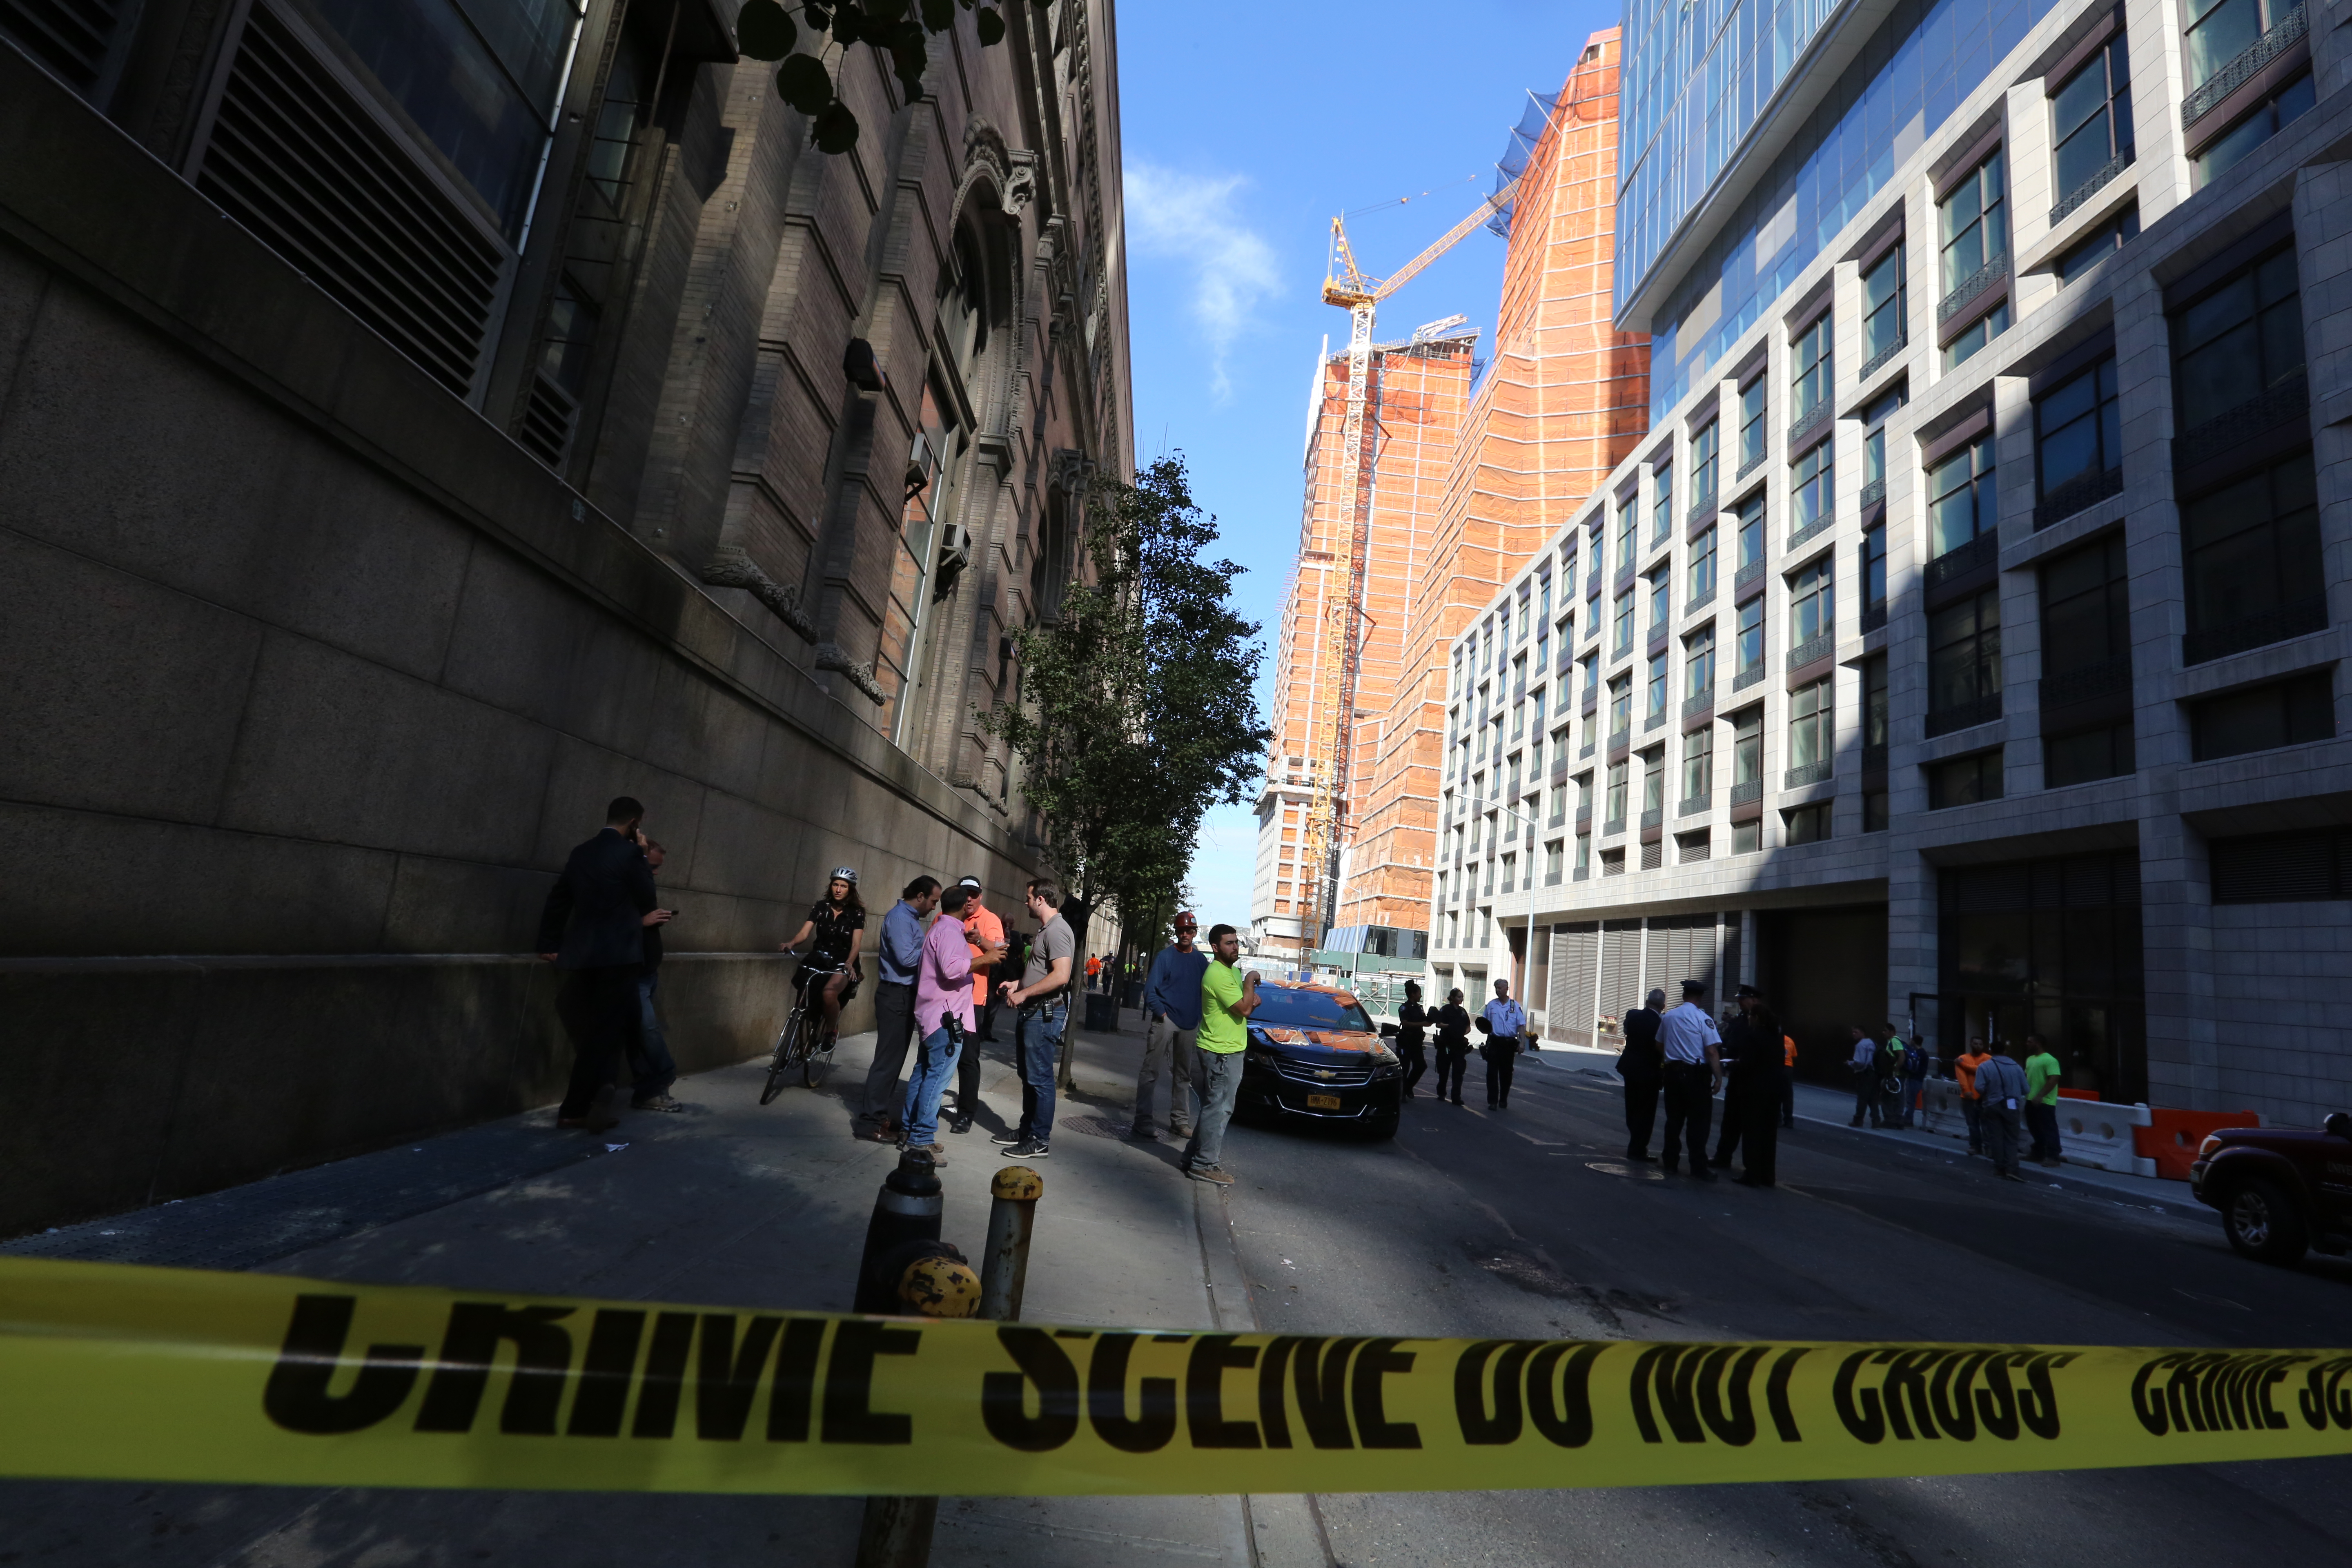 Capataz de una obra de construccion muere de un balazo por un empleado despedido hace dos dias en la Calle Oeste 59 y la Avenida 12 en Manhattan